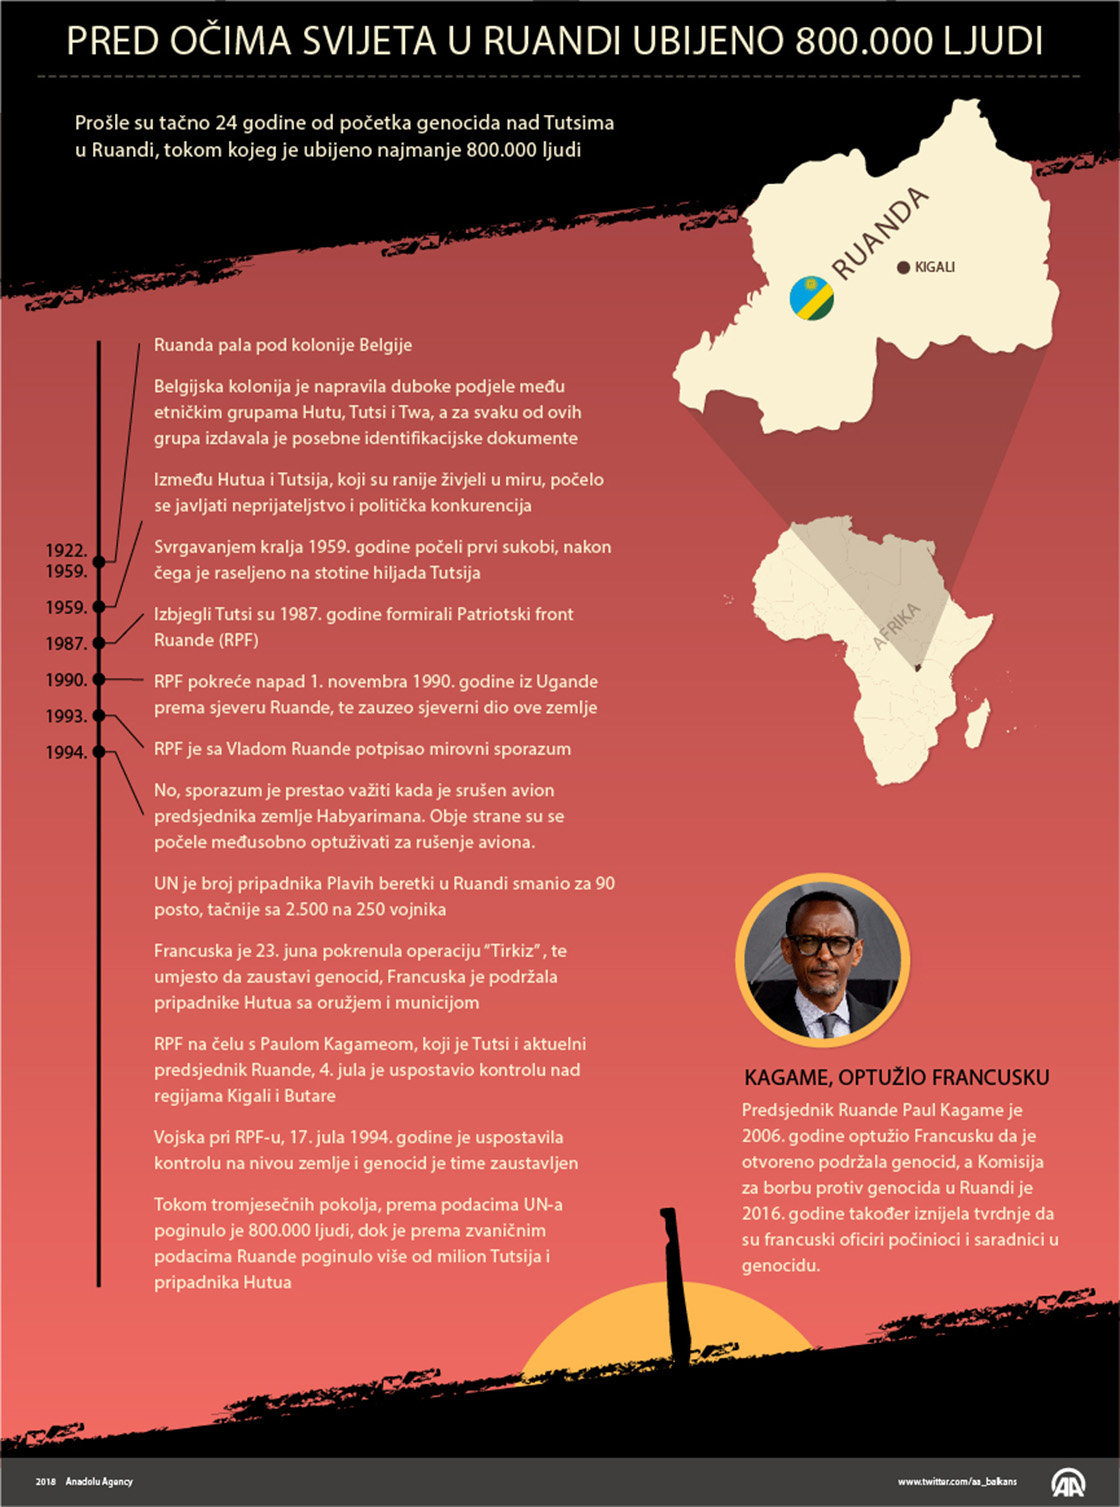 Prije 24 godine: Pred očima svijeta ubijeno je 800.000 stanovnika Ruande 